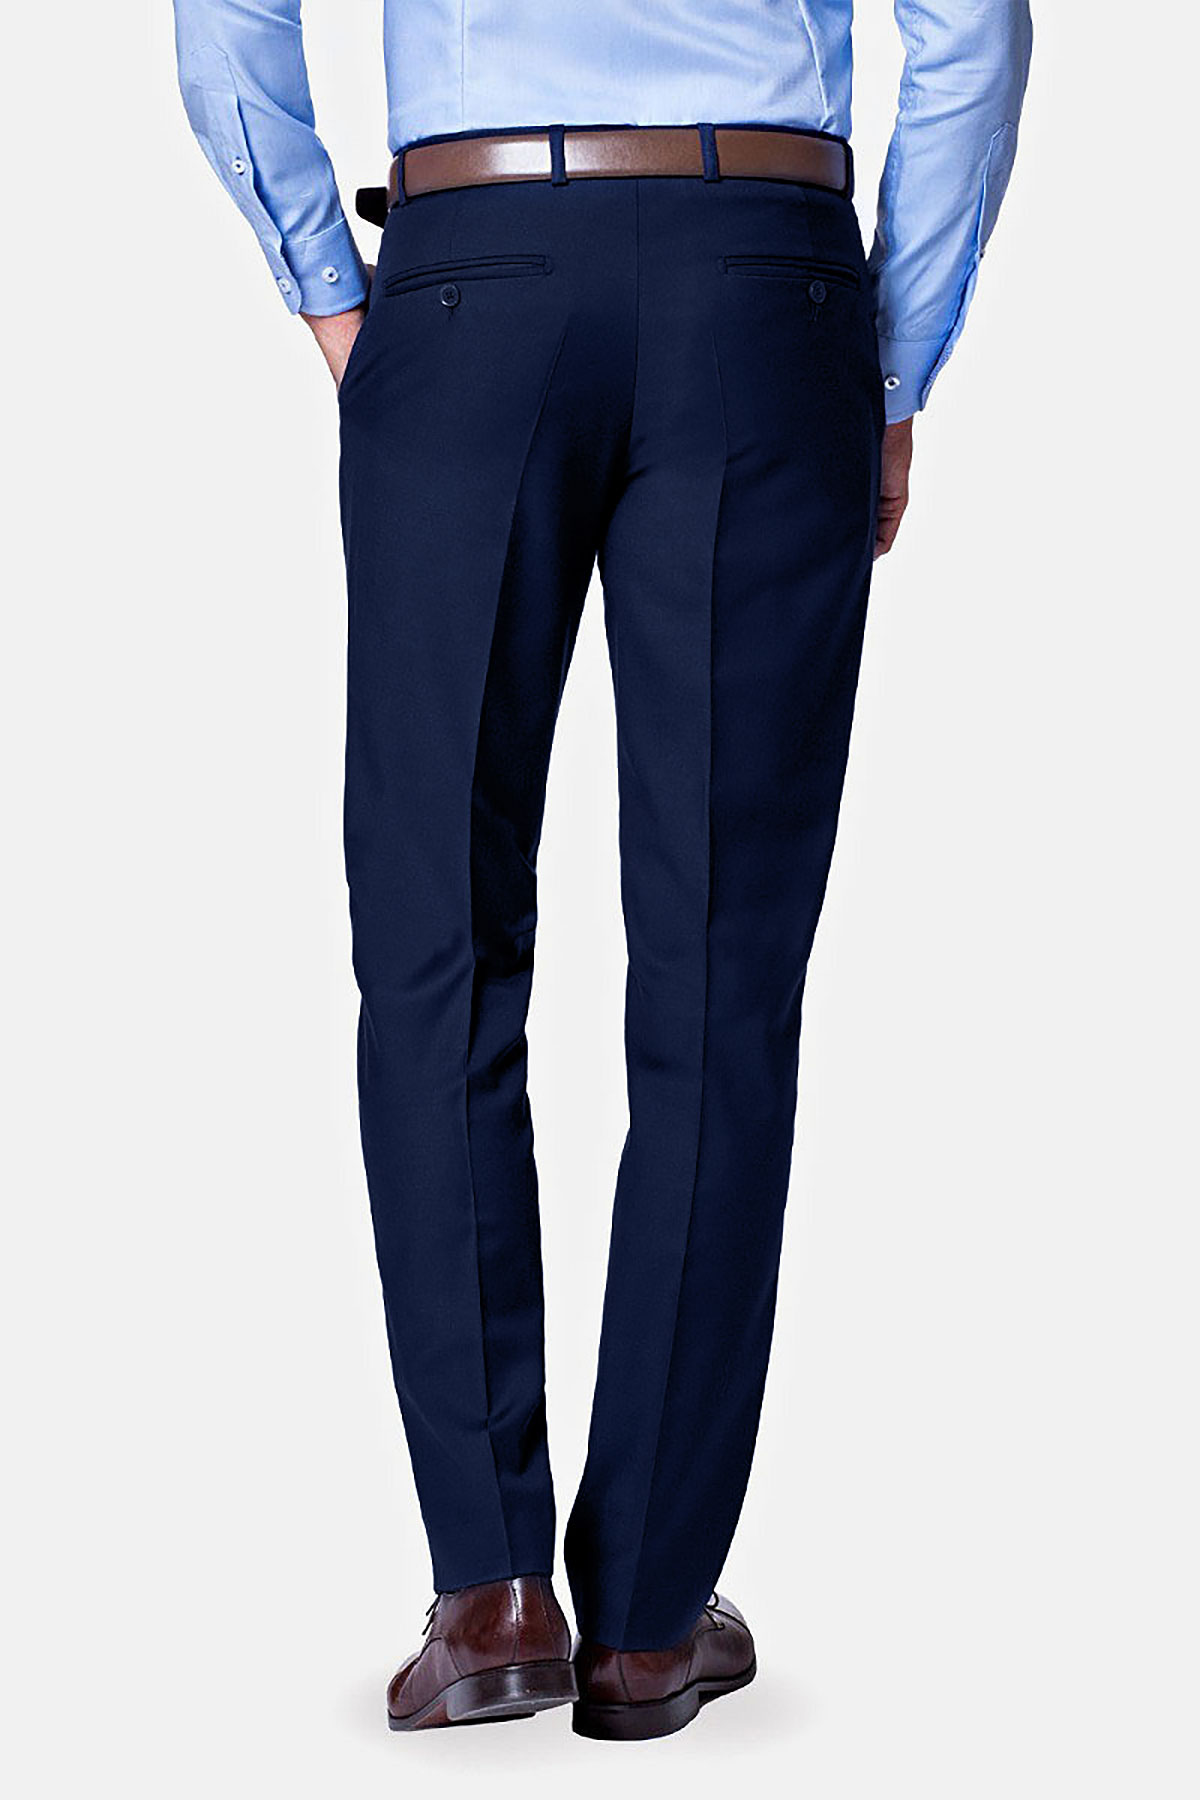 Laura Scott Spodnie garniturowe jasnoszary Wz\u00f3r w paski W stylu biznesowym Moda Garnitury Spodnie garniturowe 